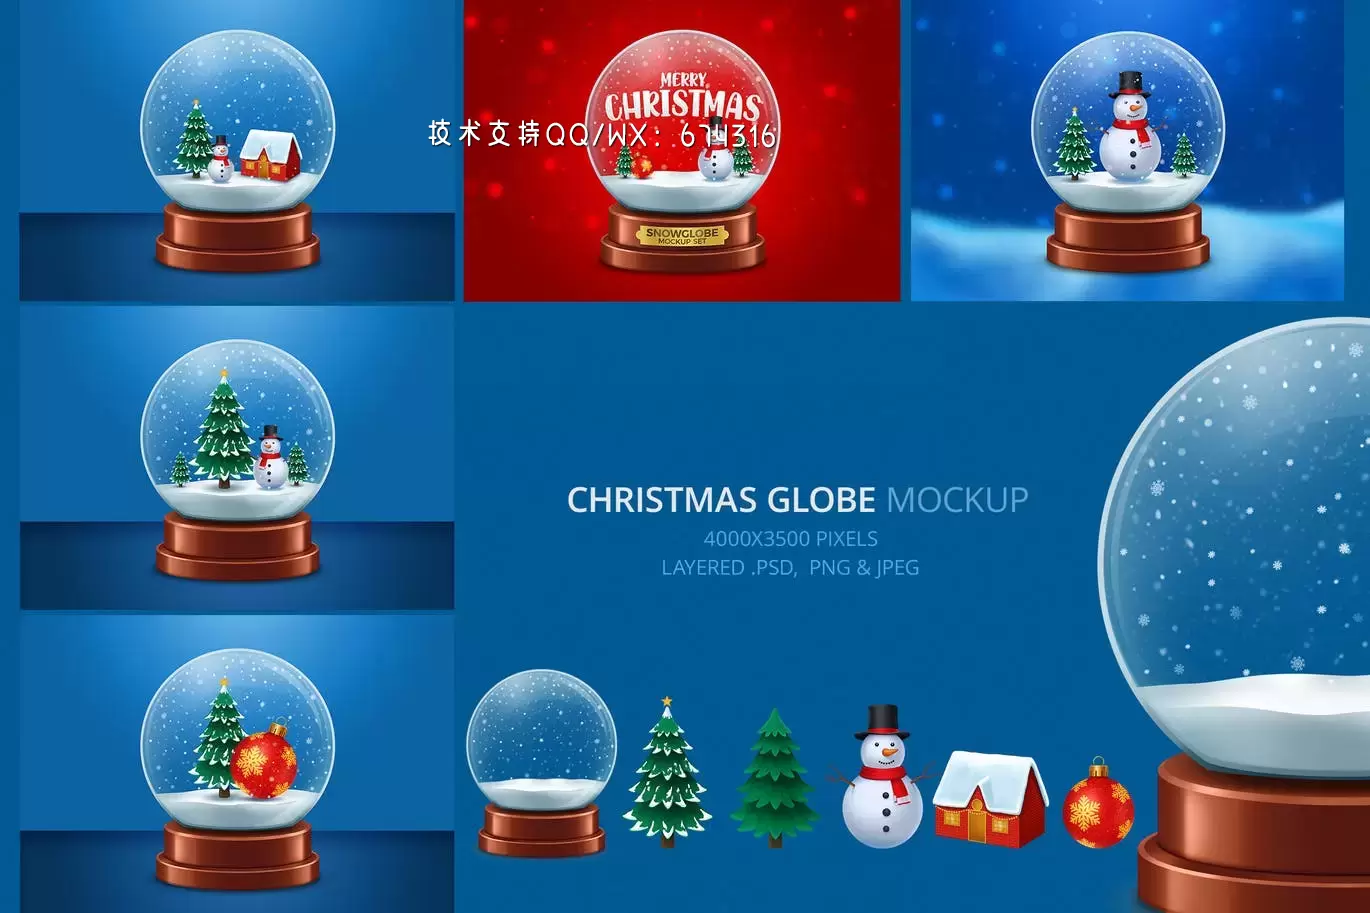 缩略图圣诞雪花玻璃球模型(PSD,PNG,JPG)下载